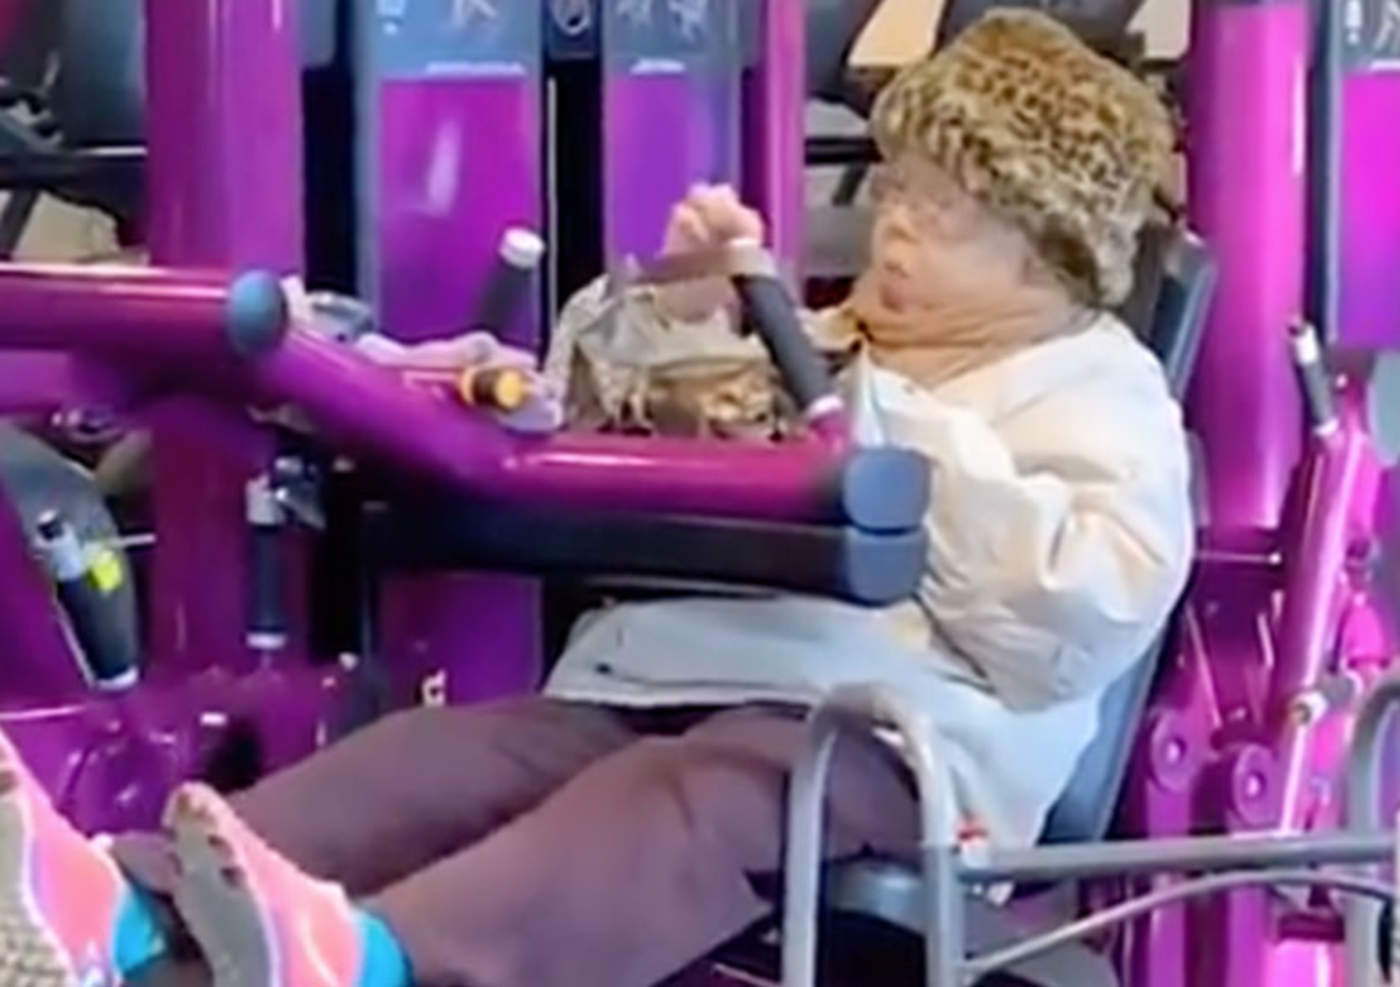 Abuelita comiendo en el gimnasio se hace viral